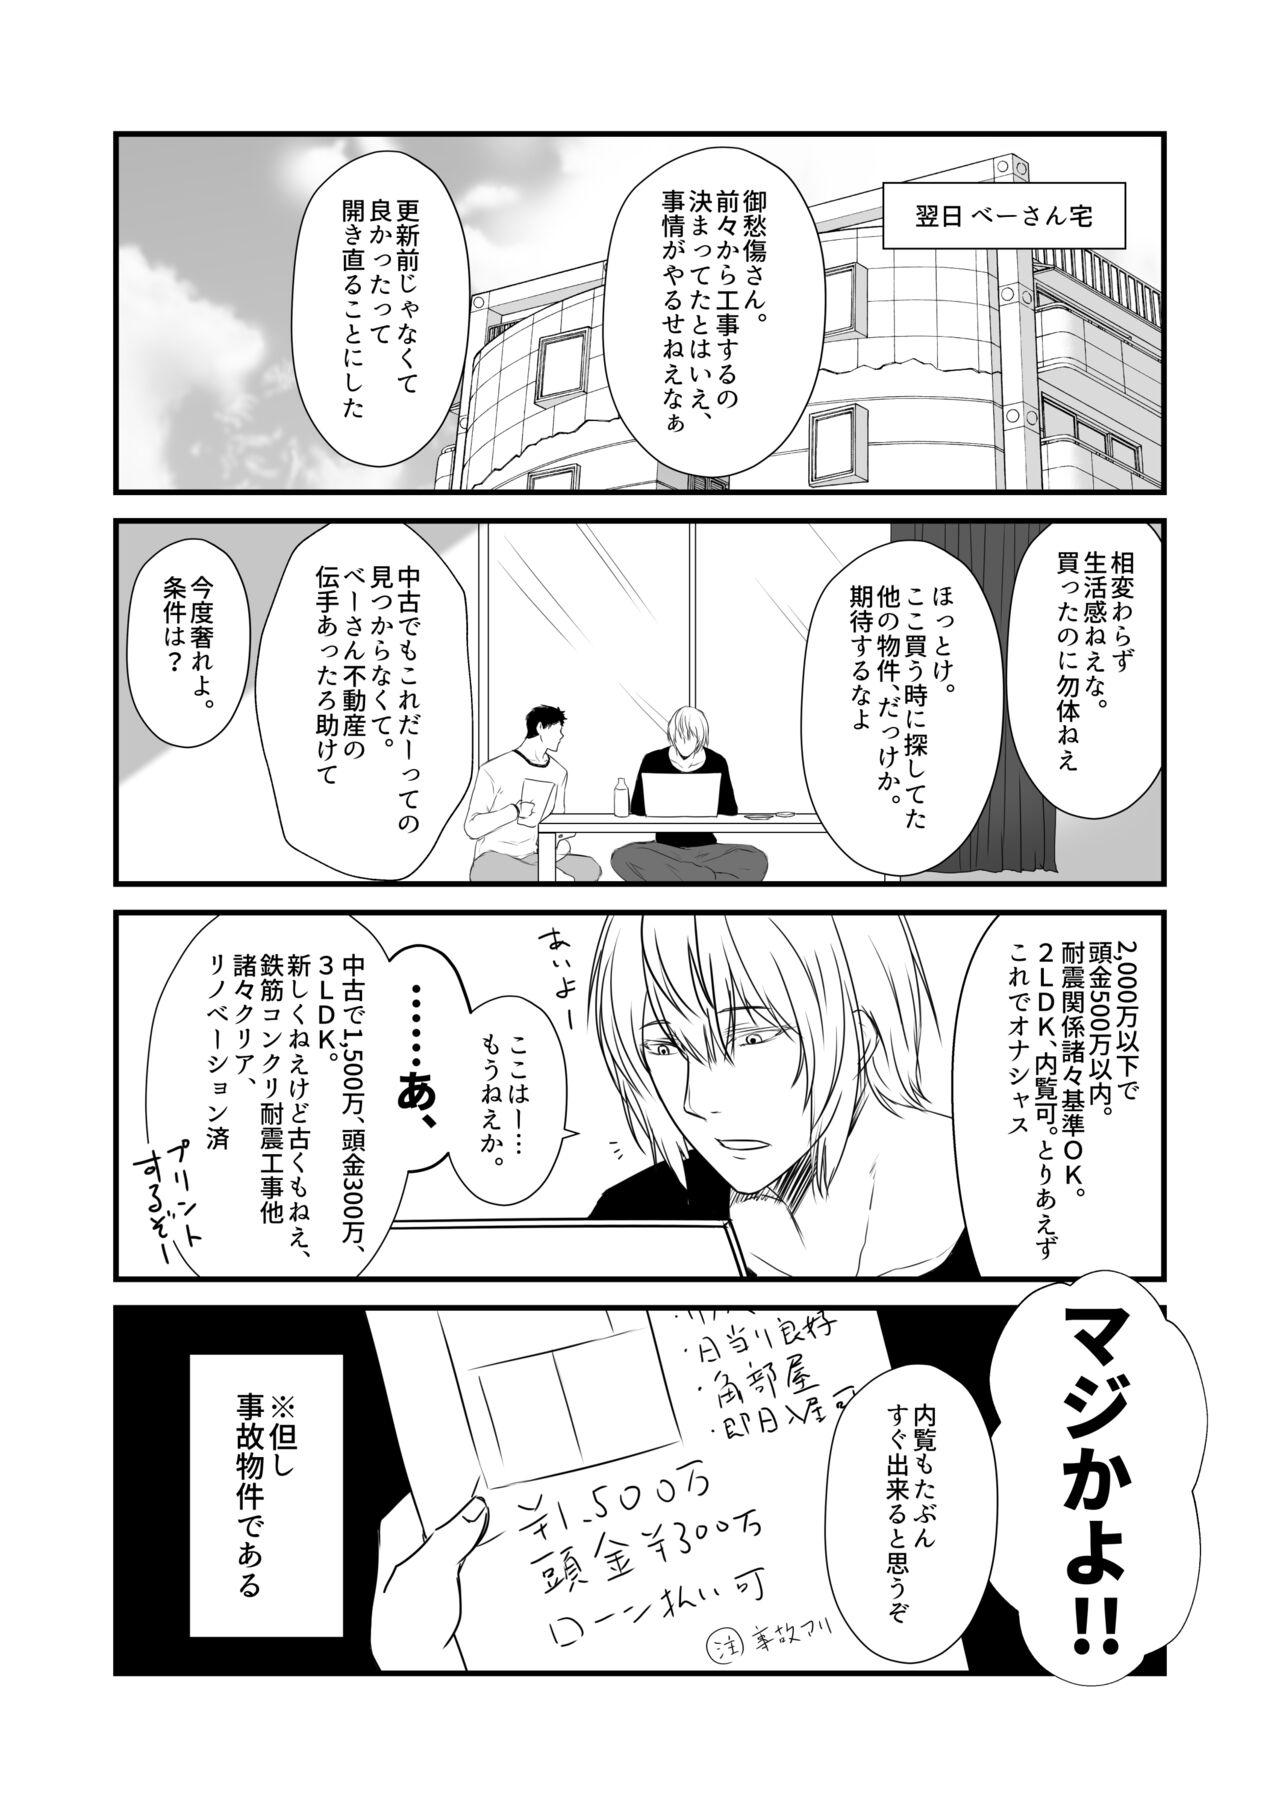 No Condom Kohaku Biyori Vol. 8 - Original Sharing - Page 9